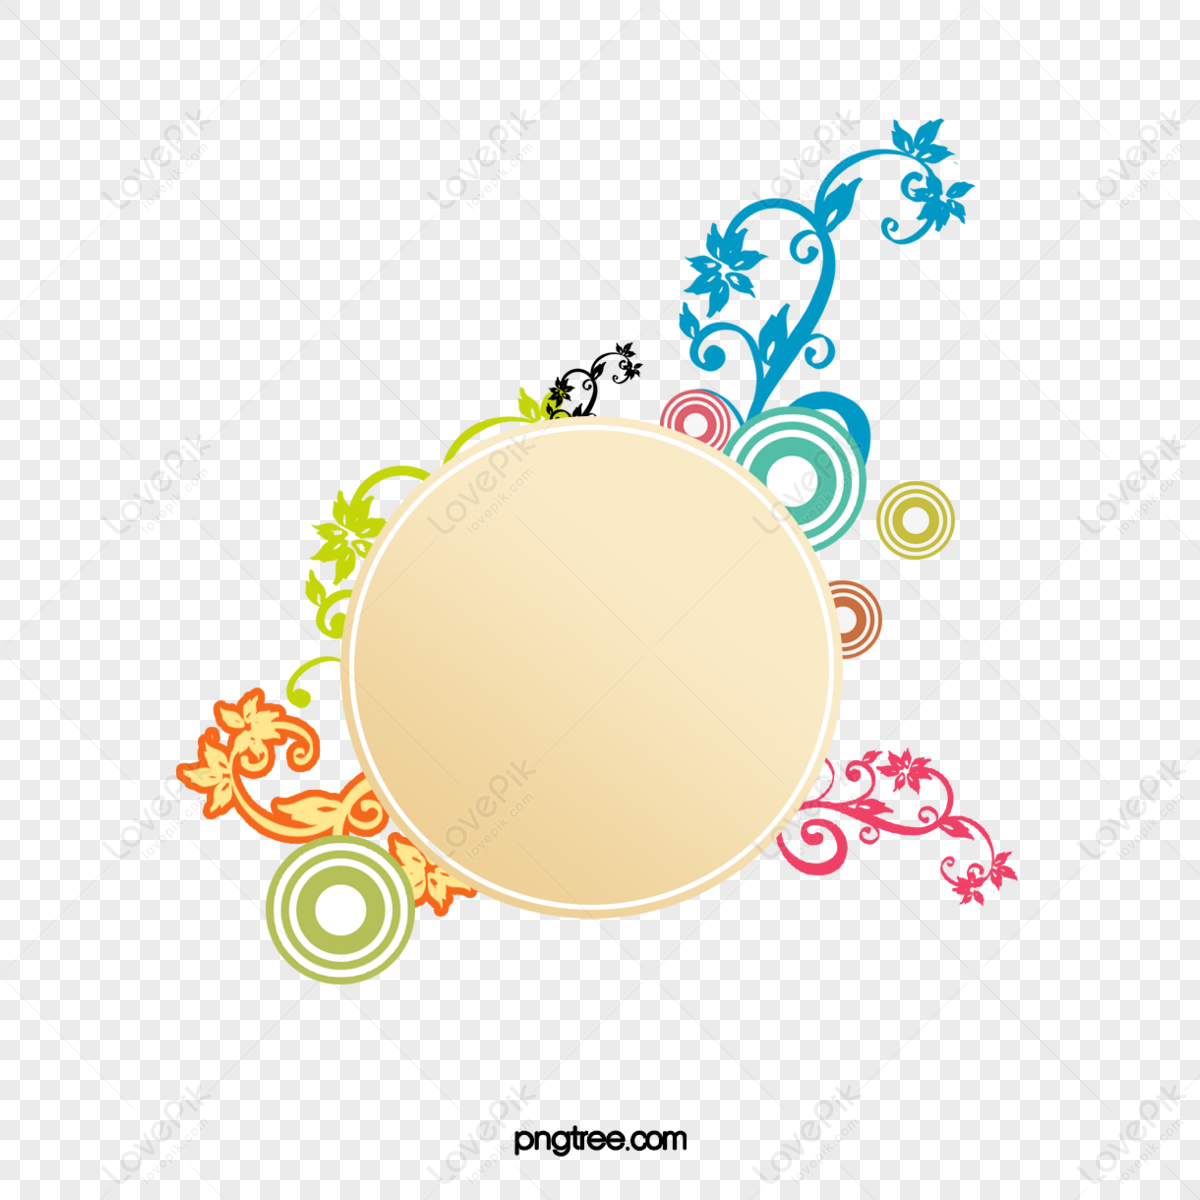 цветной круг фон PNG изображения с прозрачным фоном | Скачать бесплатно на  Lovepik.com